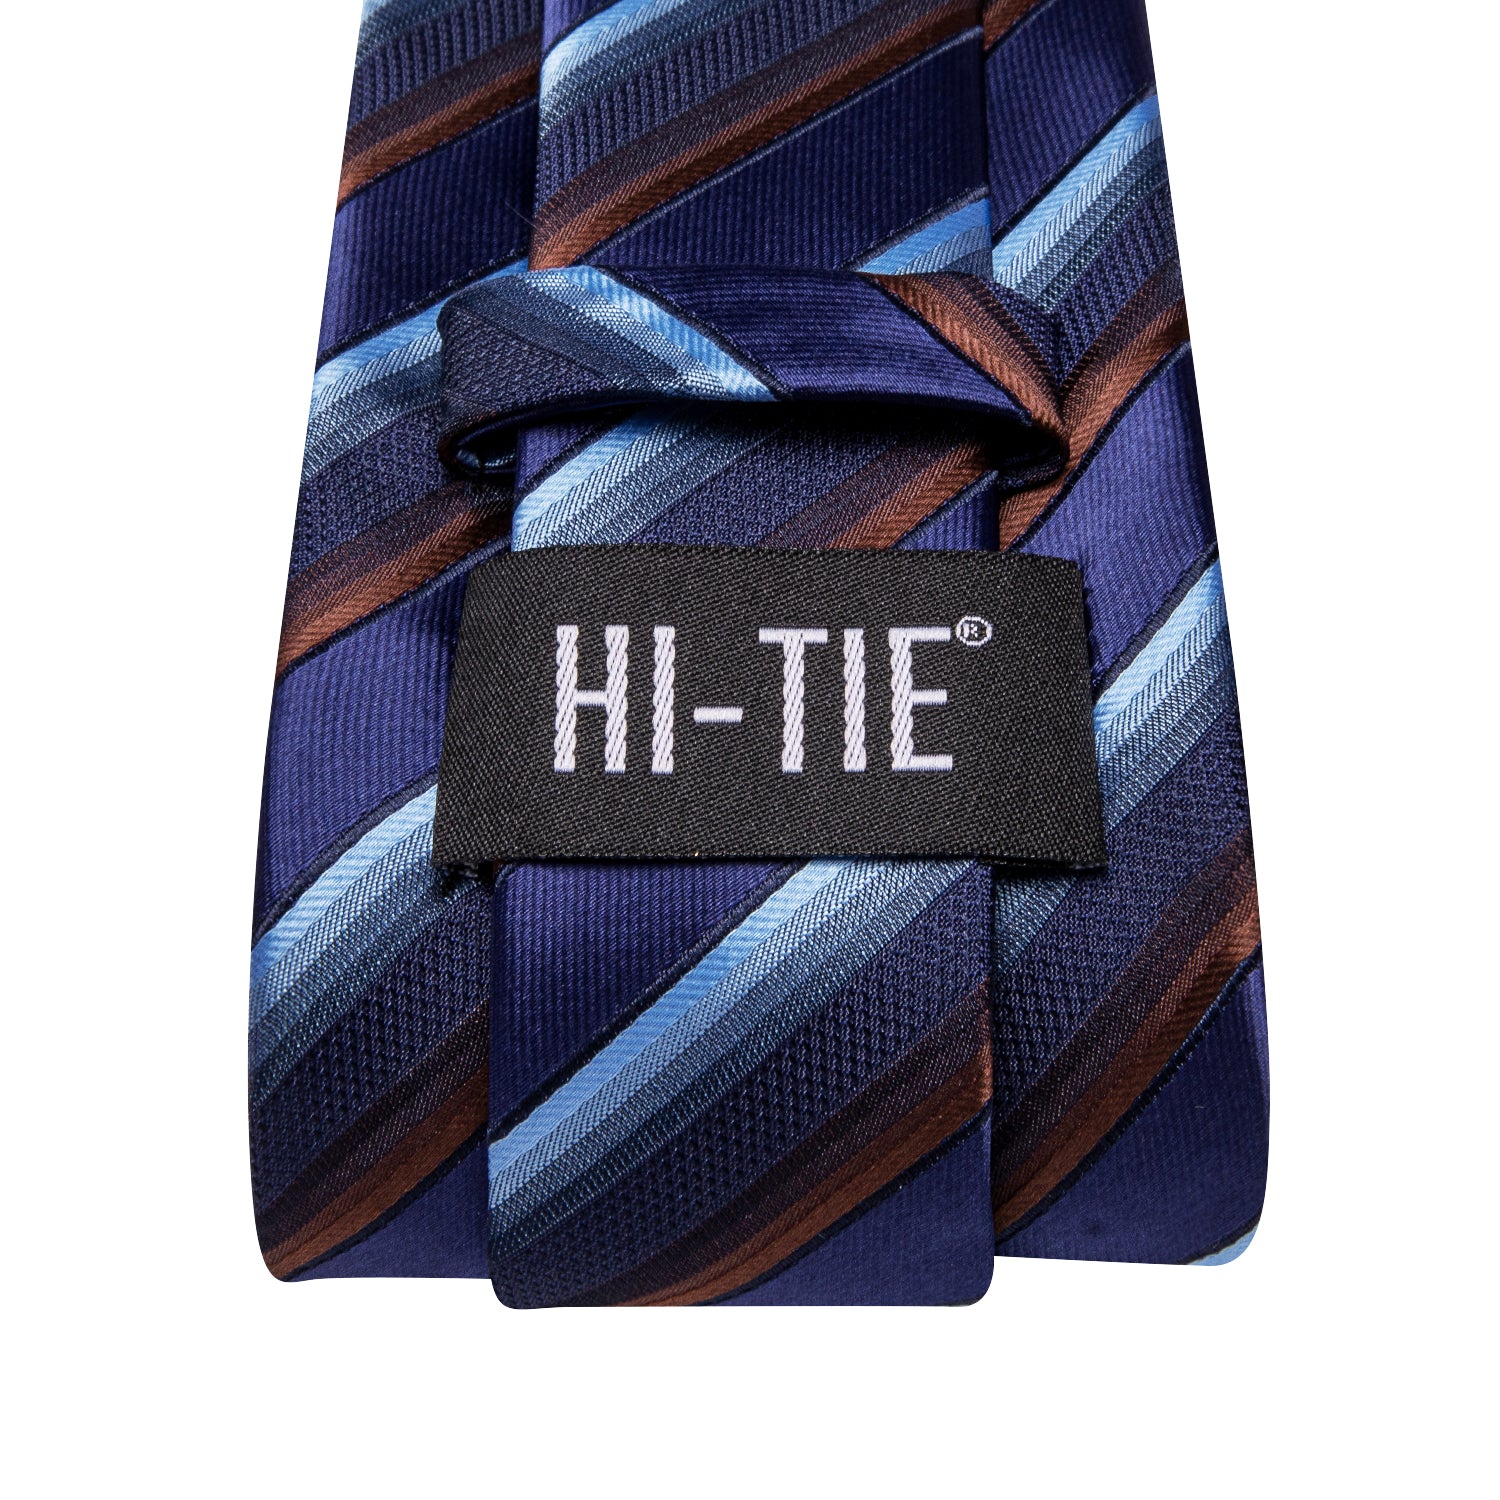 Hi-Tie Blue Red Striped Men's Tie Pocket Square Cufflinks Set